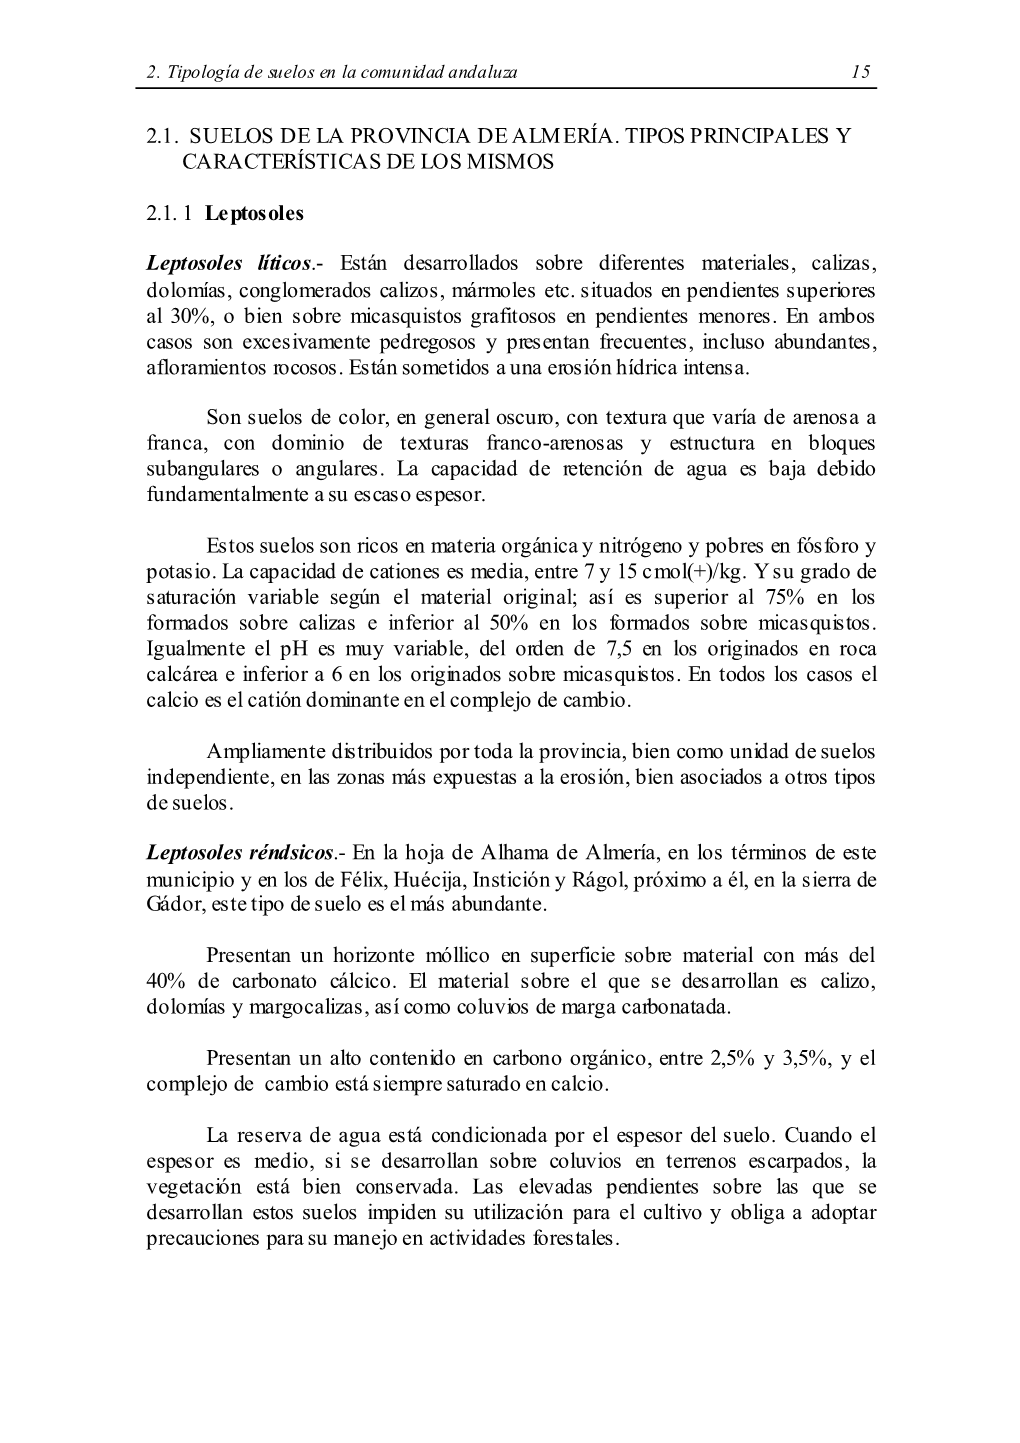 2.1. Suelos De La Provincia De Almería. Tipos Principales Y Características De Los Mismos